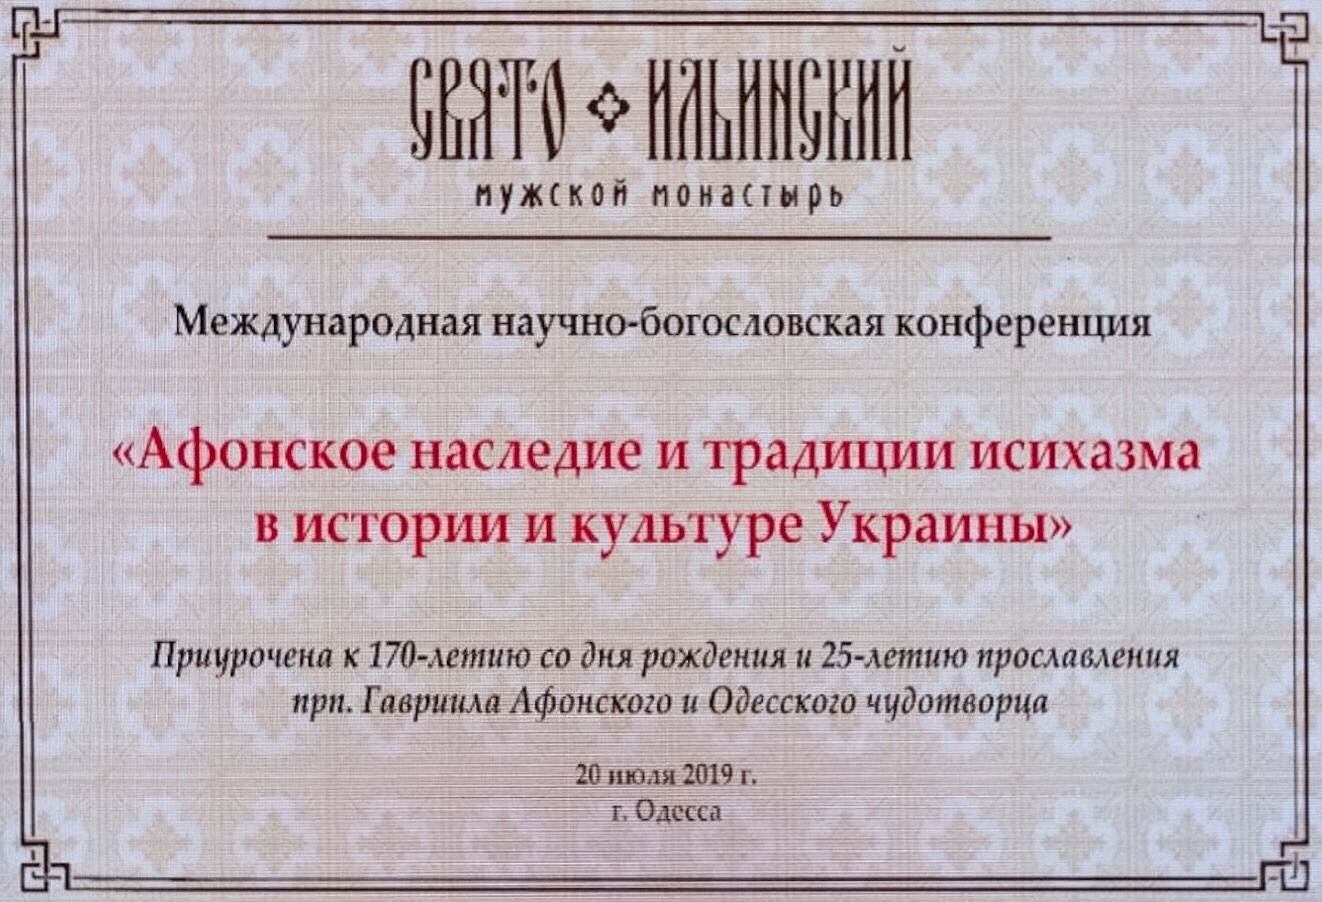 Участие в конференции "Афонское наследие и традиции исихазма в истории и культуре Украины"